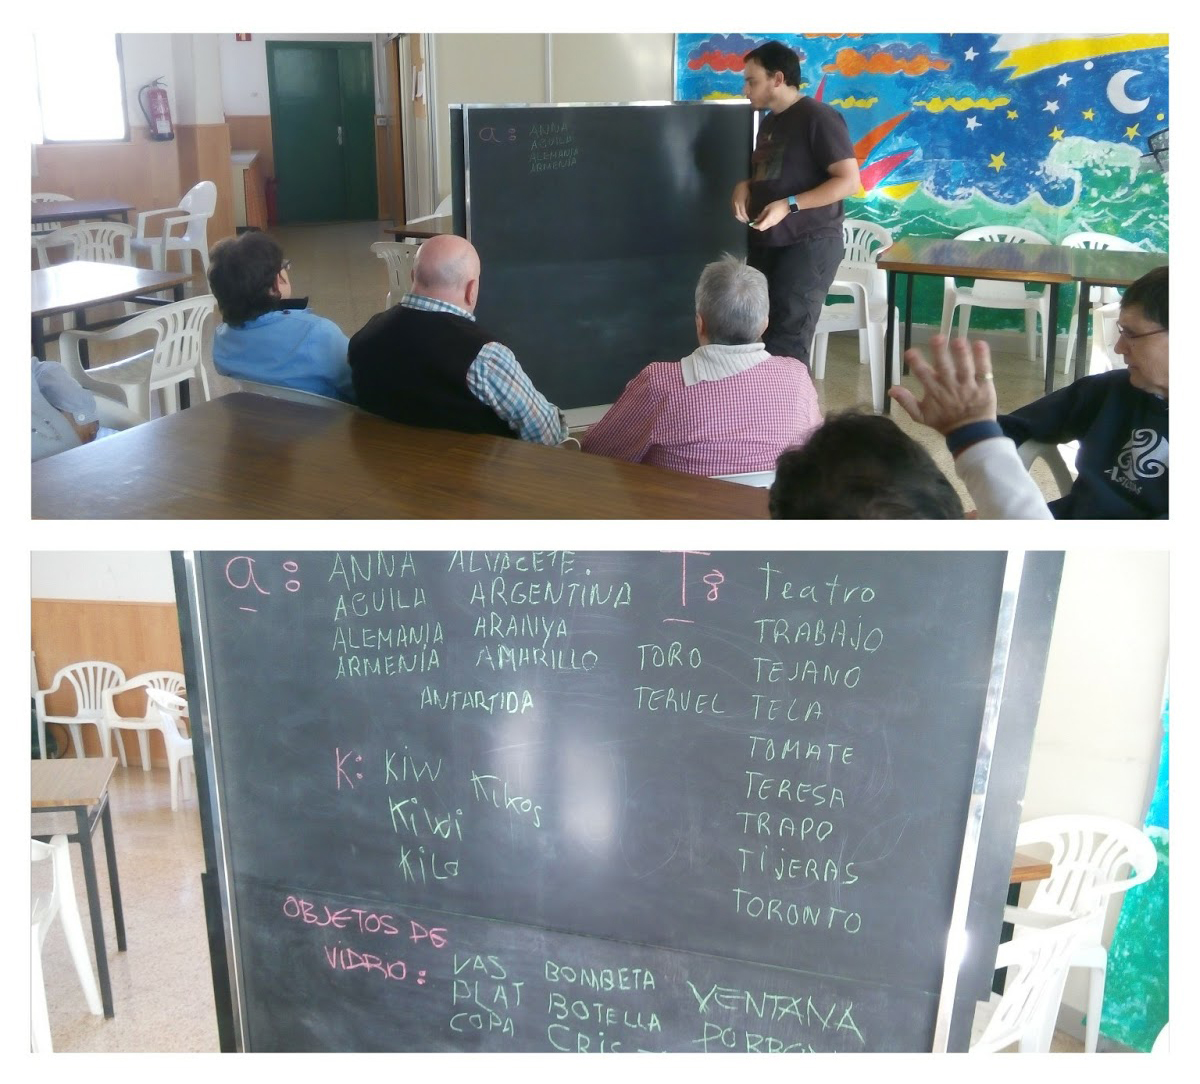 Dues fotografies d'una sessió del taller de memòria-lectura amb el professor i els usuaris